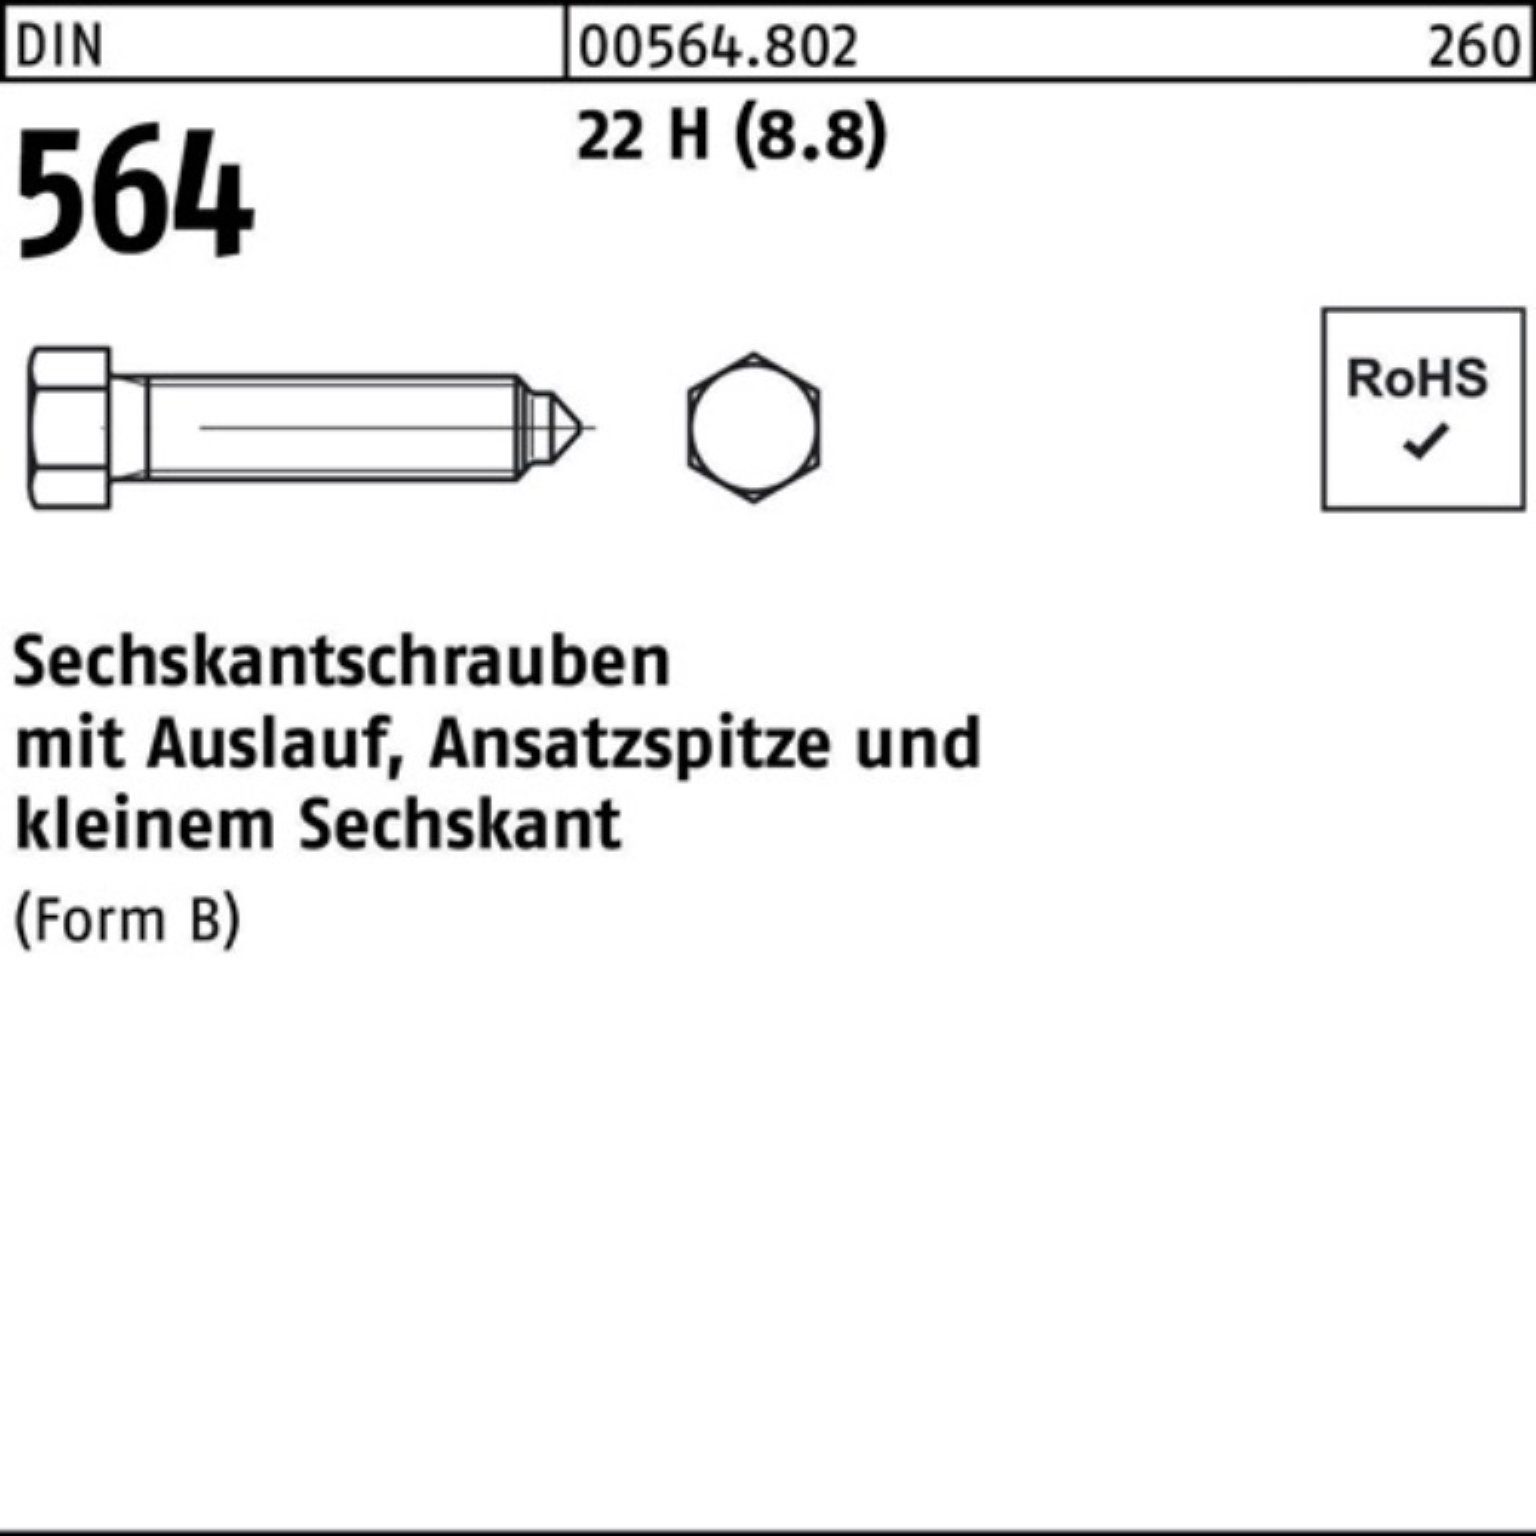 Reyher Sechskantschraube 100er Pack Sechskantschraube DIN 564 Ansatzspitze/Auslauf BM 6x 25 22